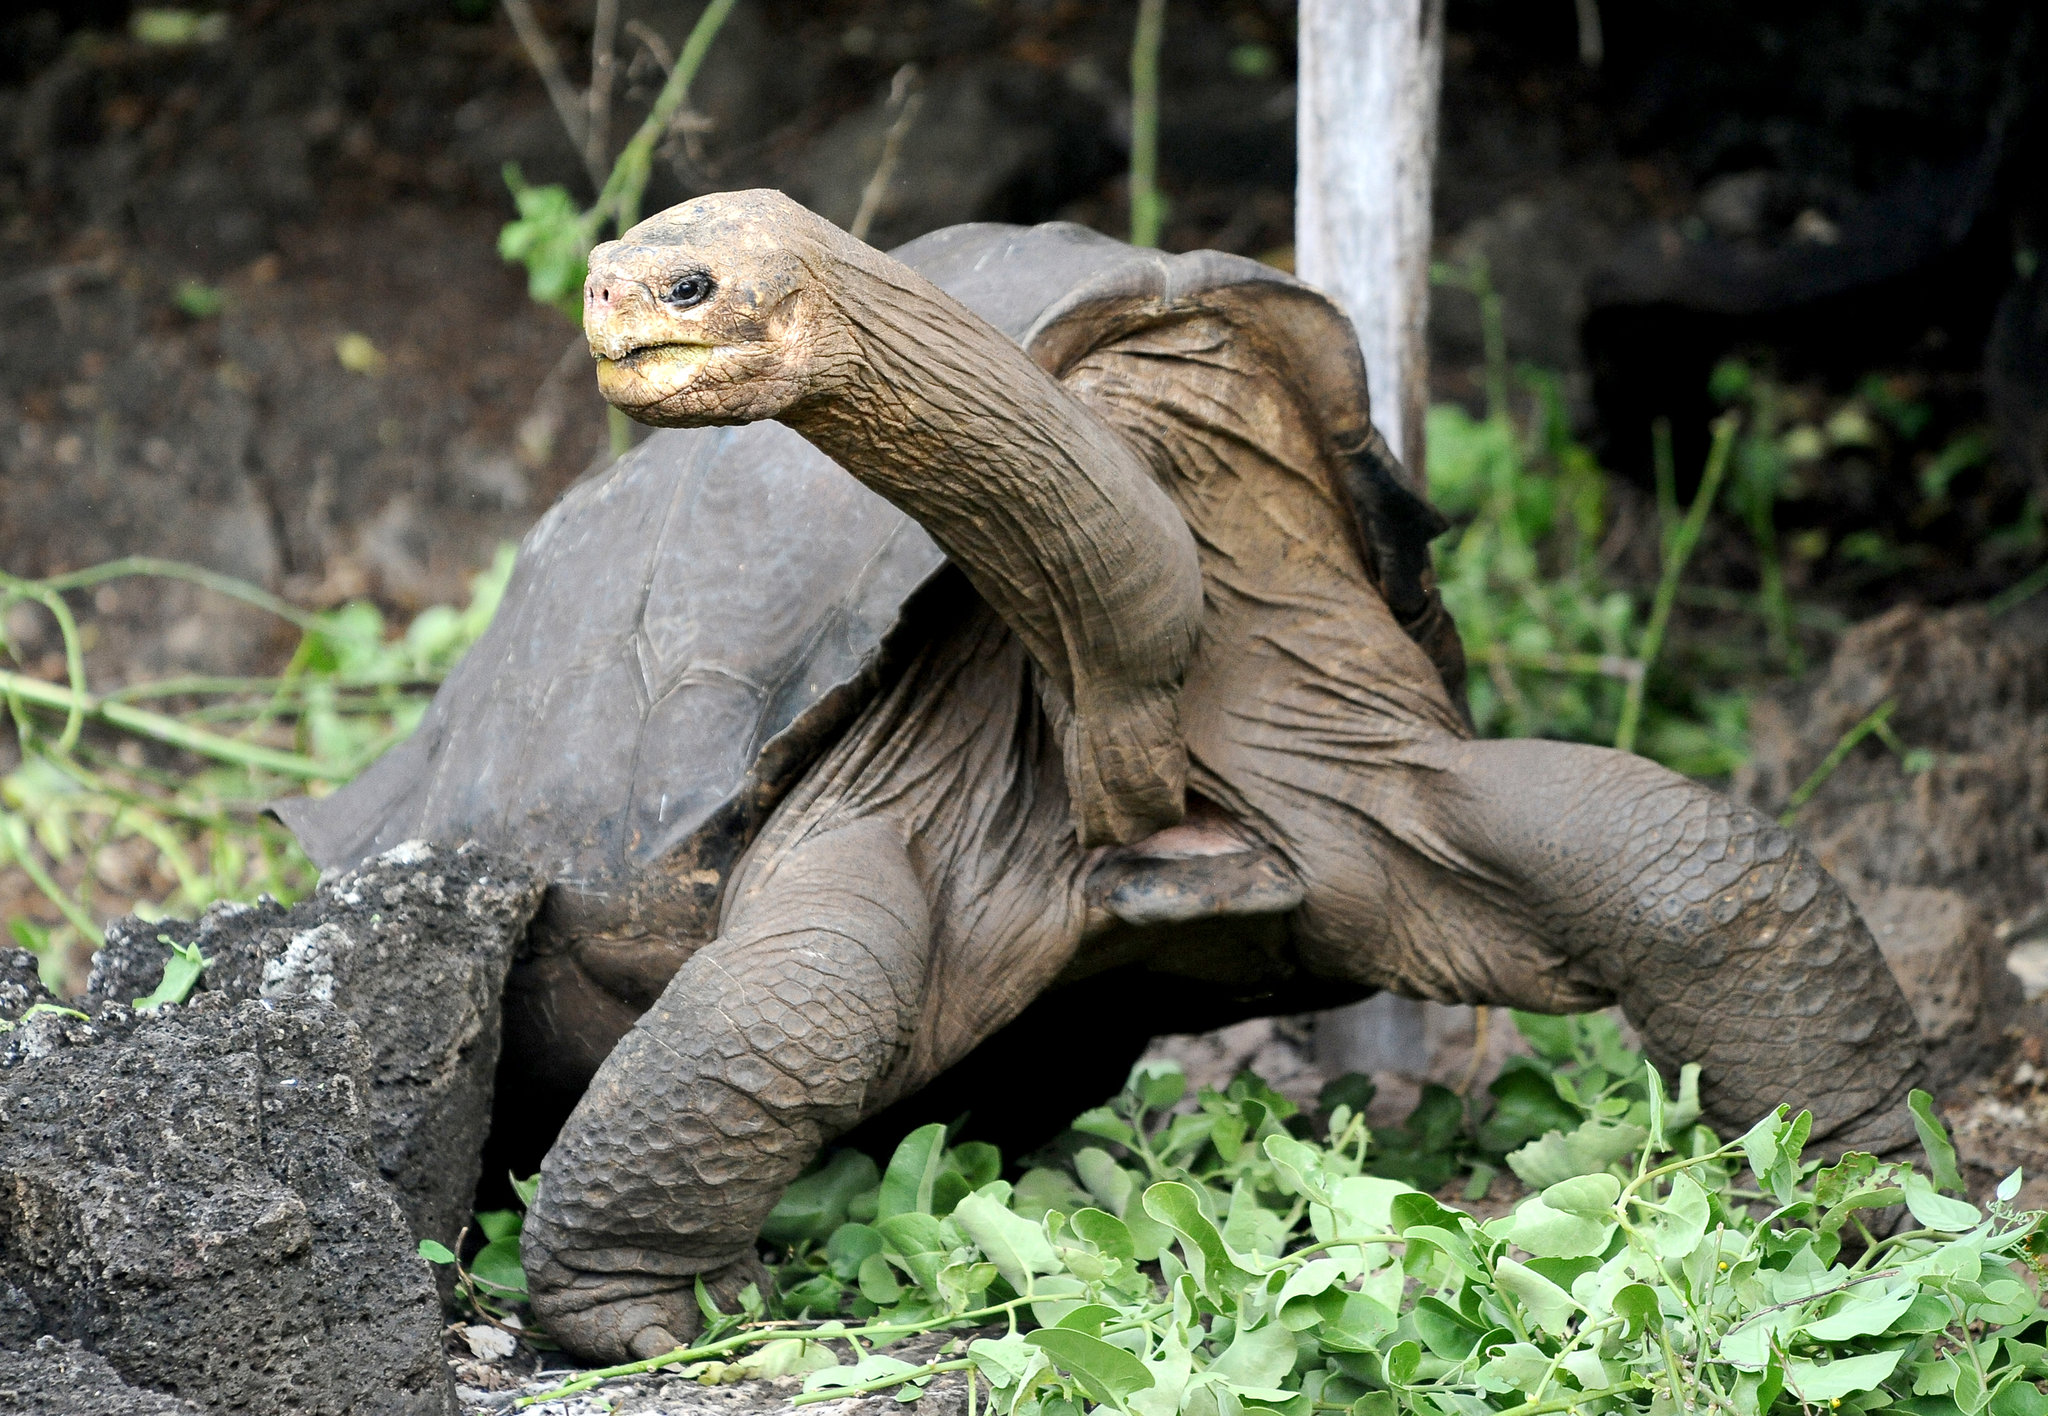 Абингдонские слоновые черепахи. Абингдонская слоновая черепаха Джордж. Галапагосская черепаха Джордж. Галапагосская черепаха одинокий Джордж. Абингдонская слоновая черепаха вымершее животное.